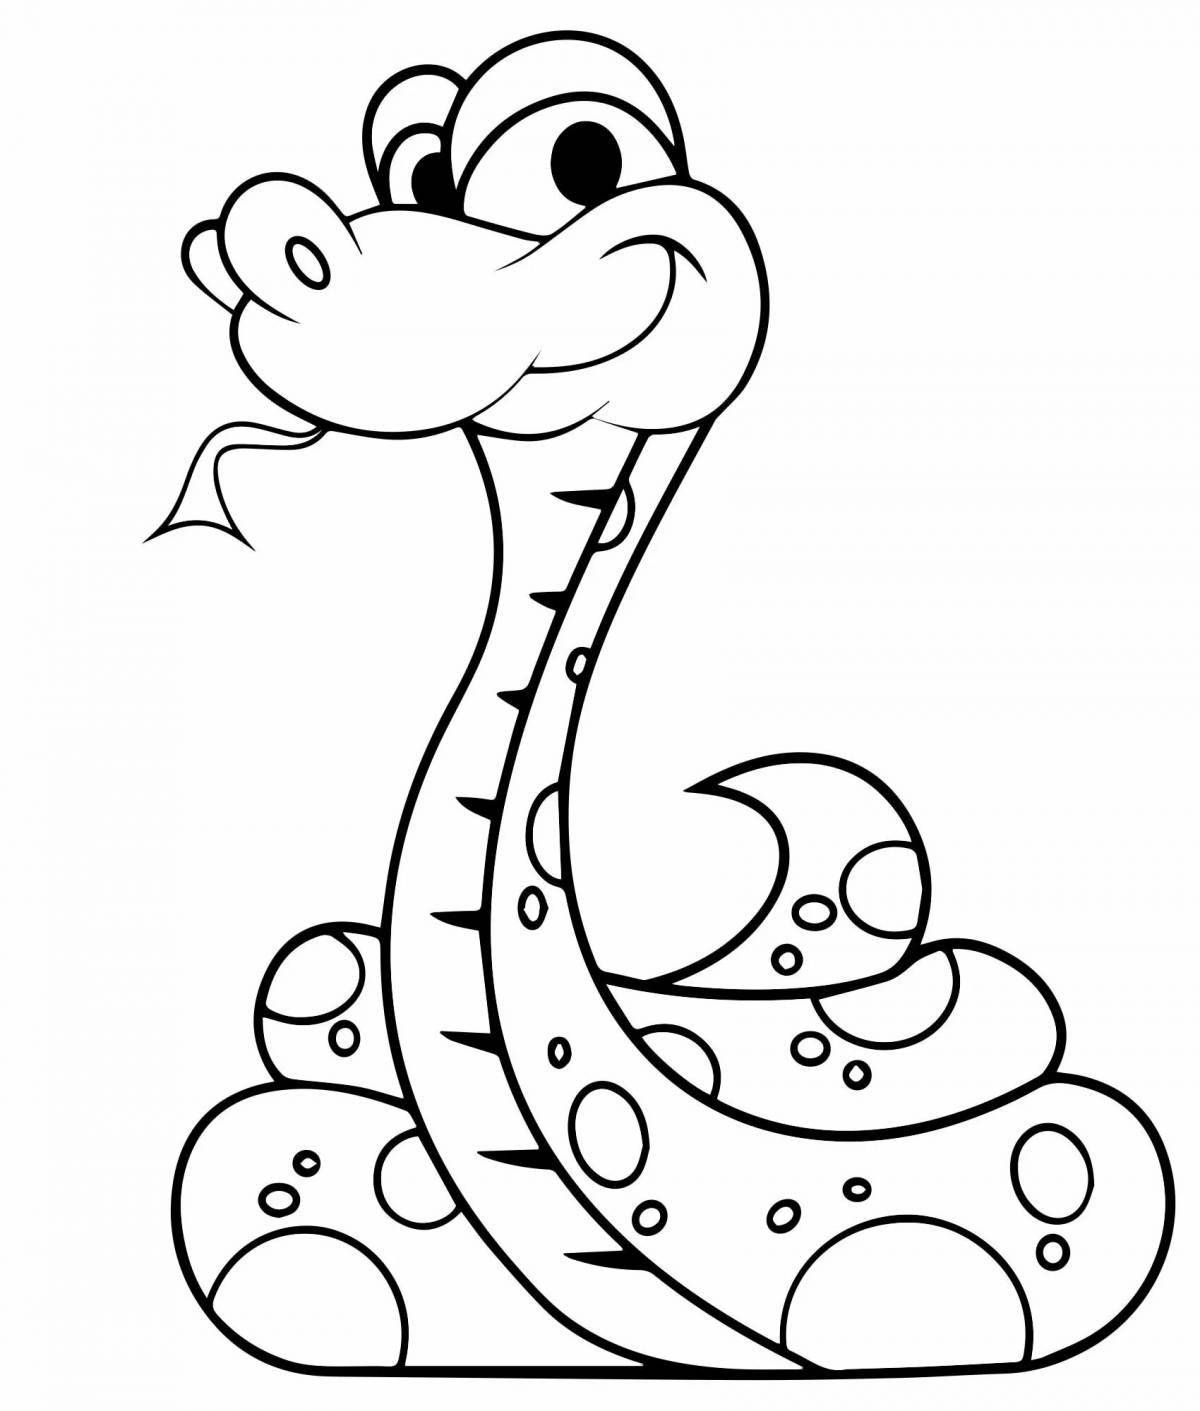 Подробная страница рисования змеи